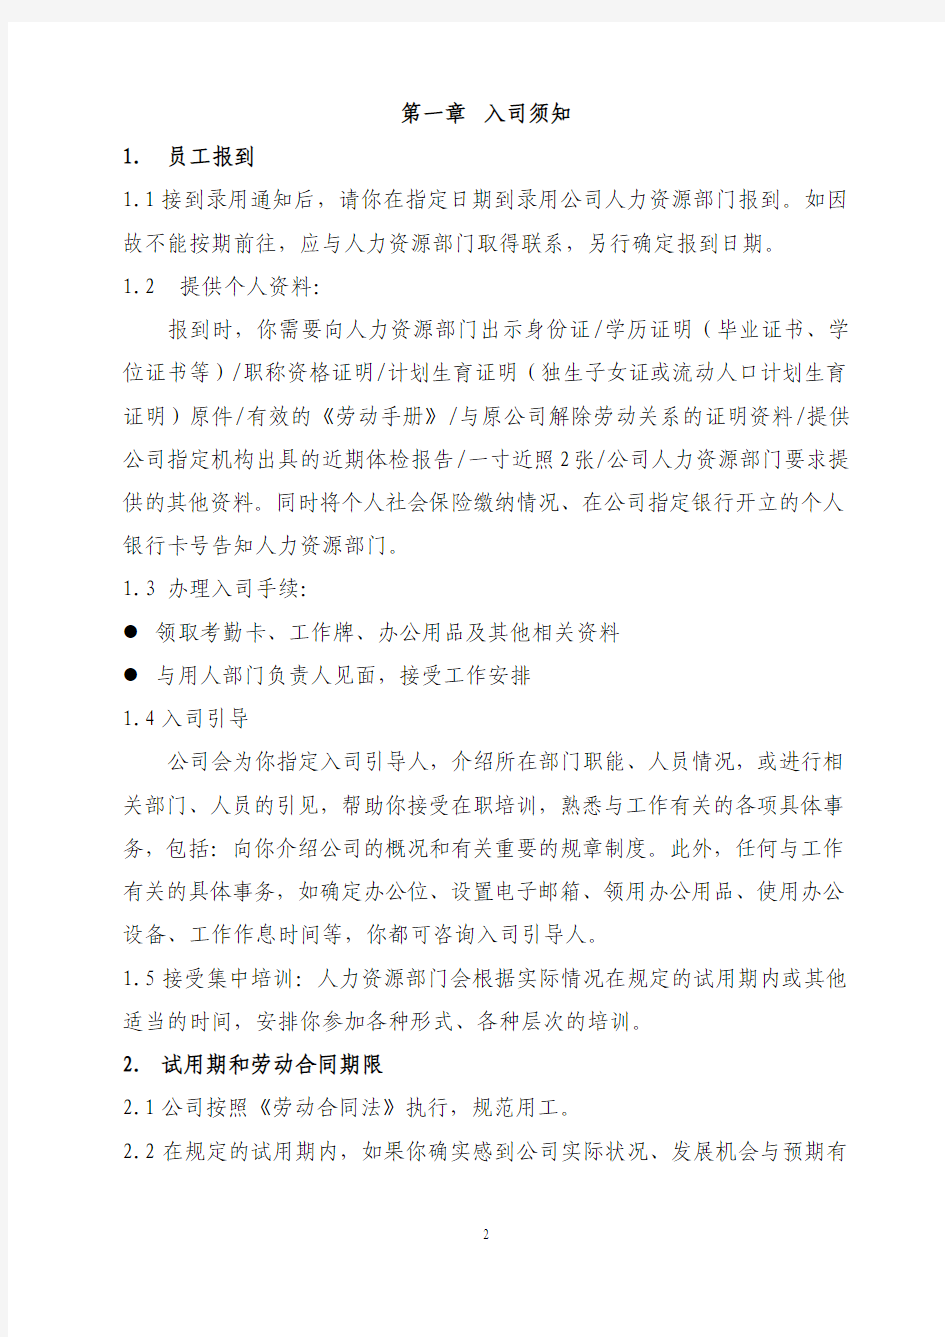 上海xxxxxxxx投资集团员工手册及奖惩